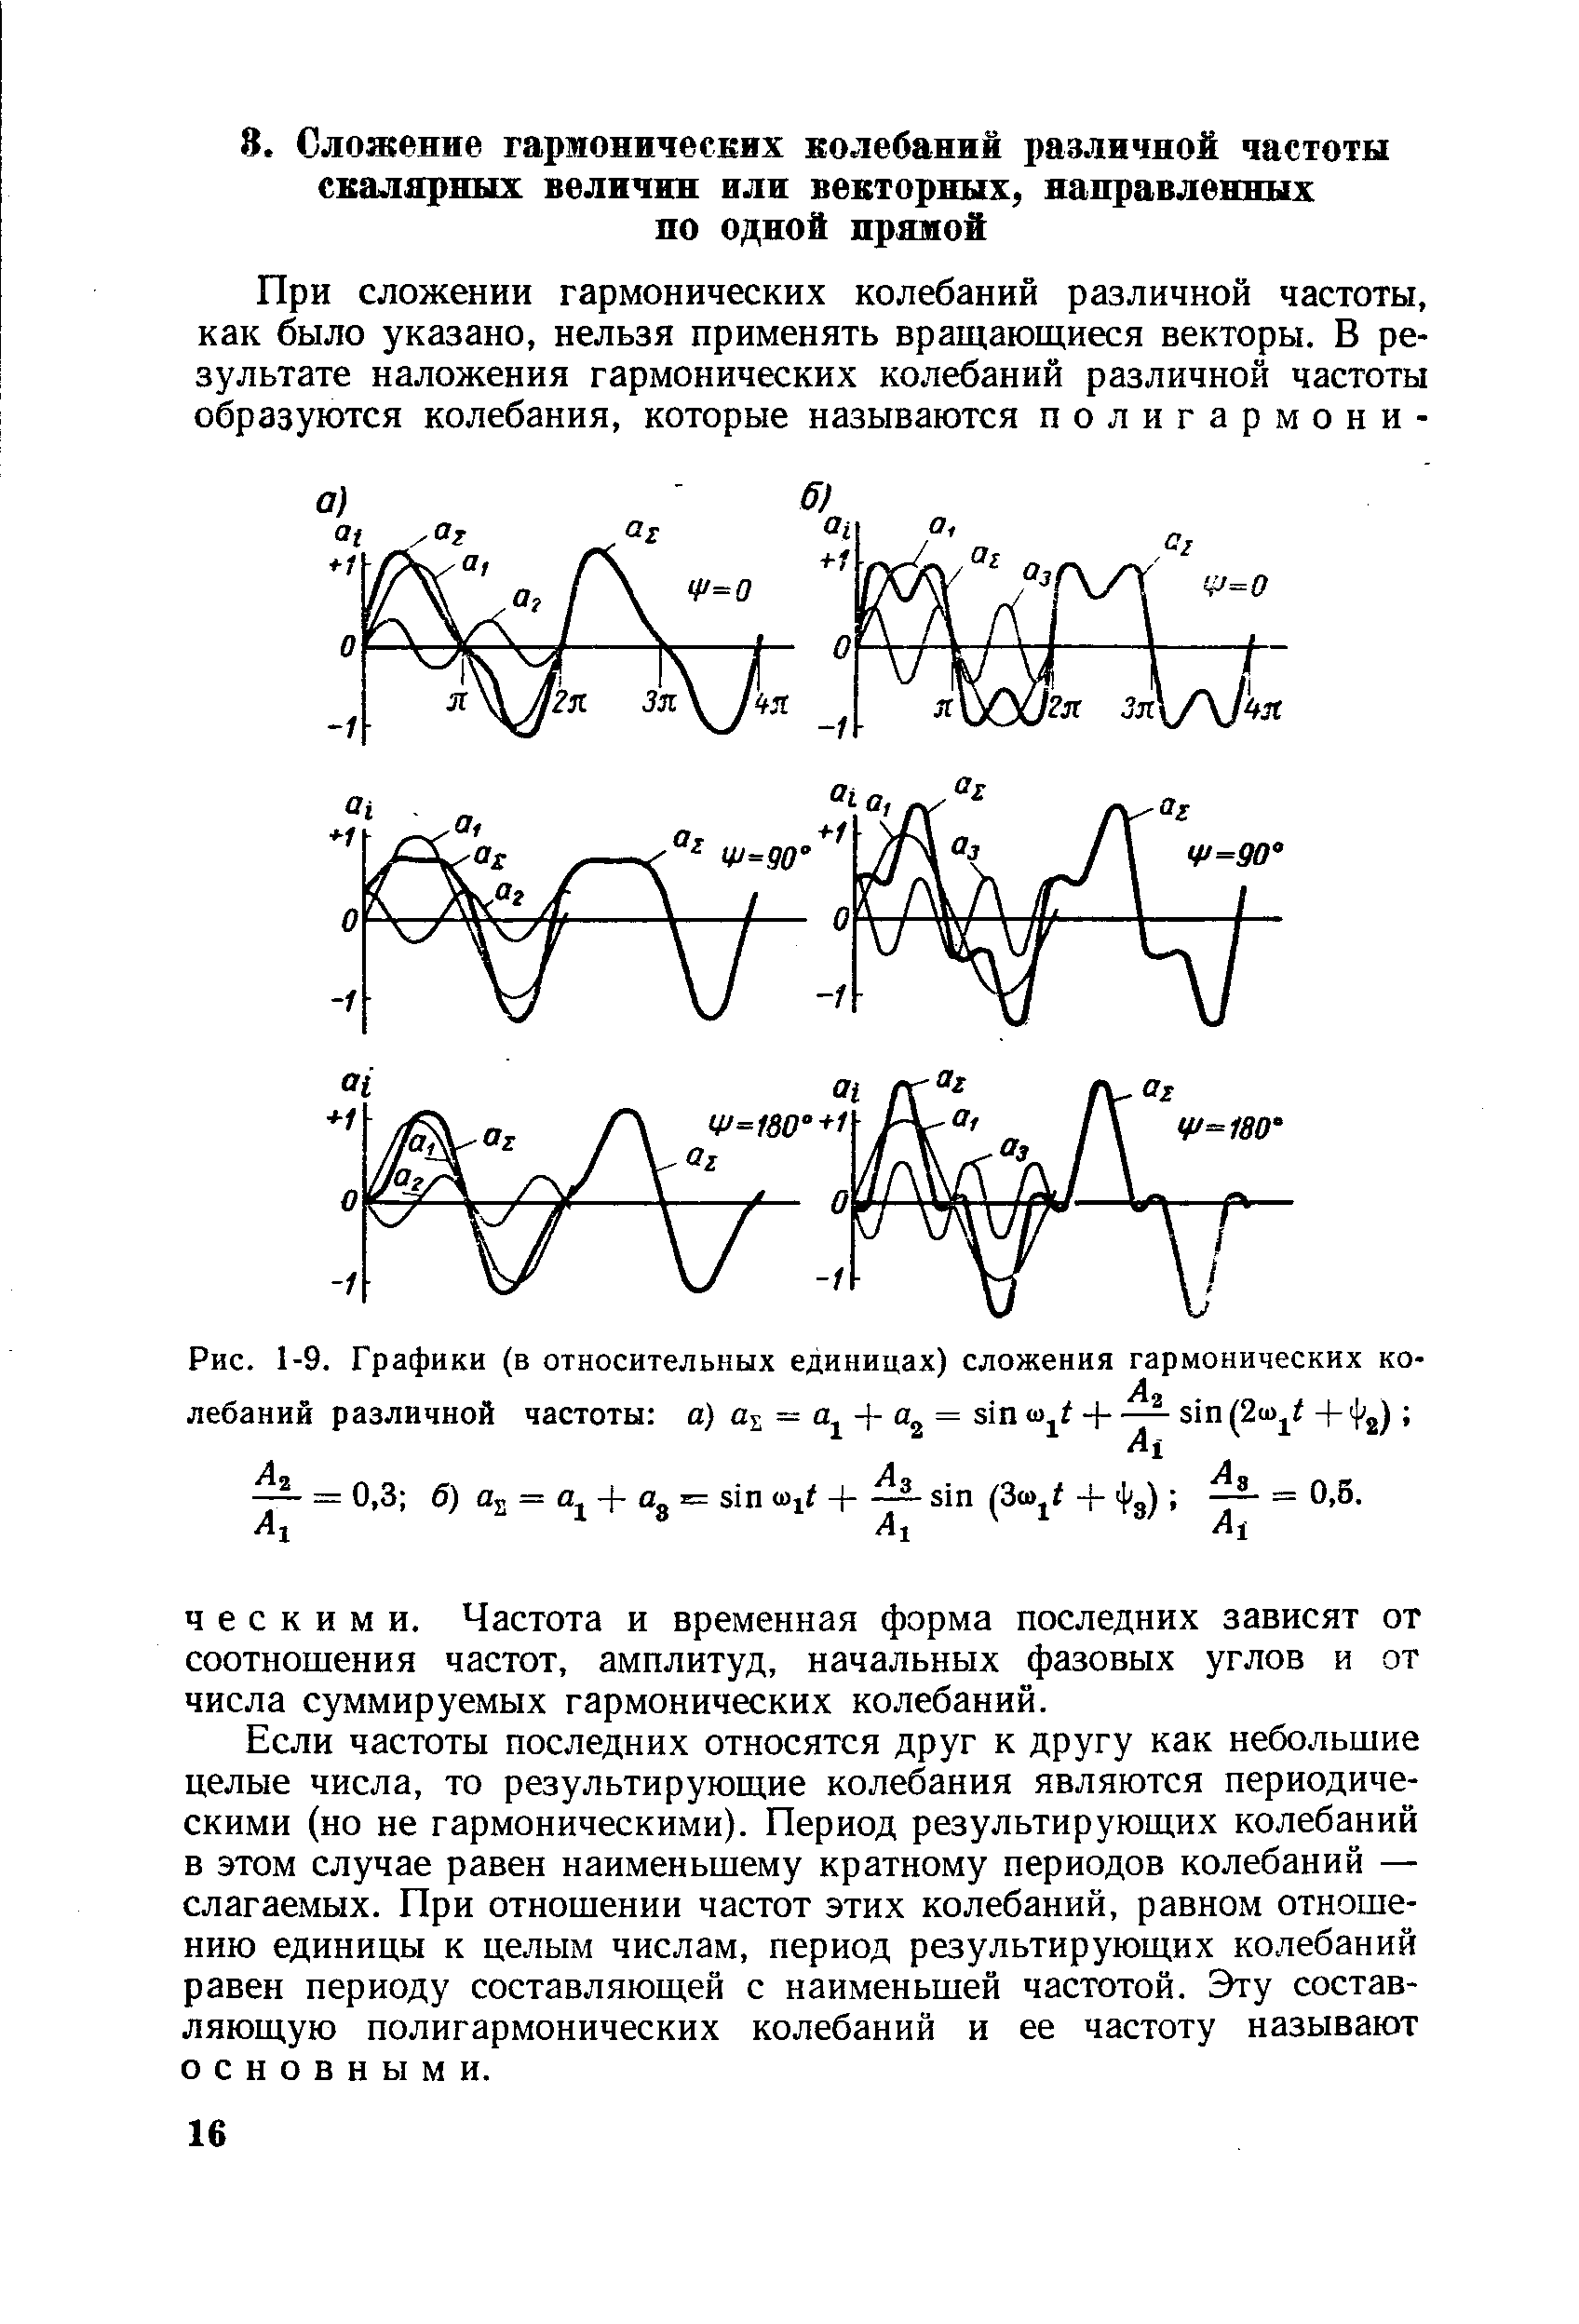 Ч е С к и М И. Частота и временная форма последних зависят от соотношения частот, амплитуд, начальных фазовых углов и от числа суммируемых гармонических колебаний.
